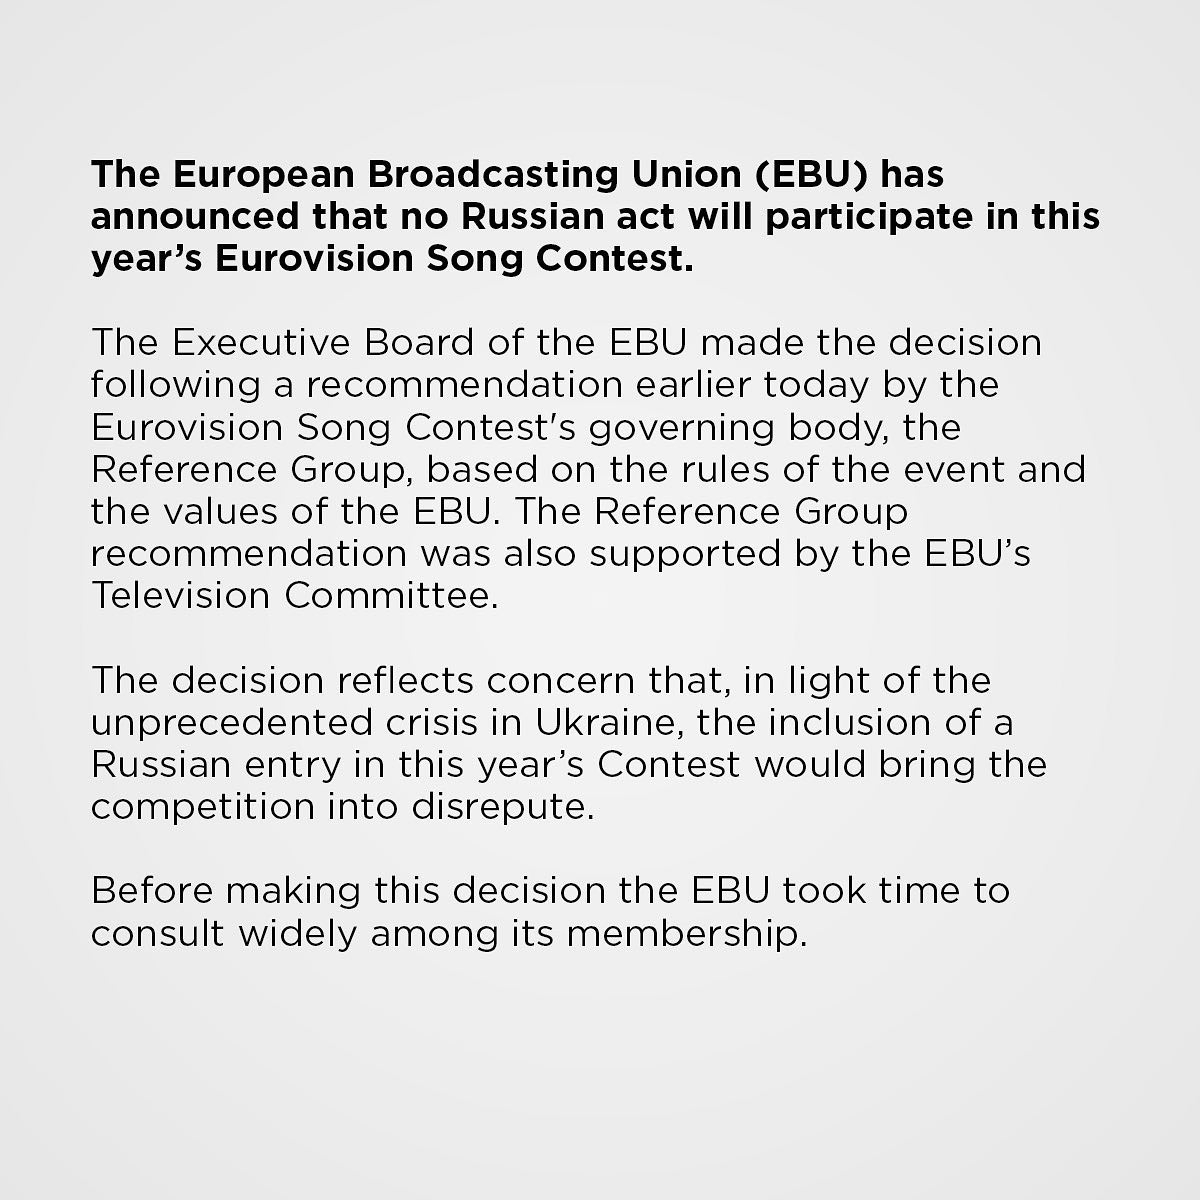 La Unión Europea de Radiodifusión emitió la declaración anterior el viernes.